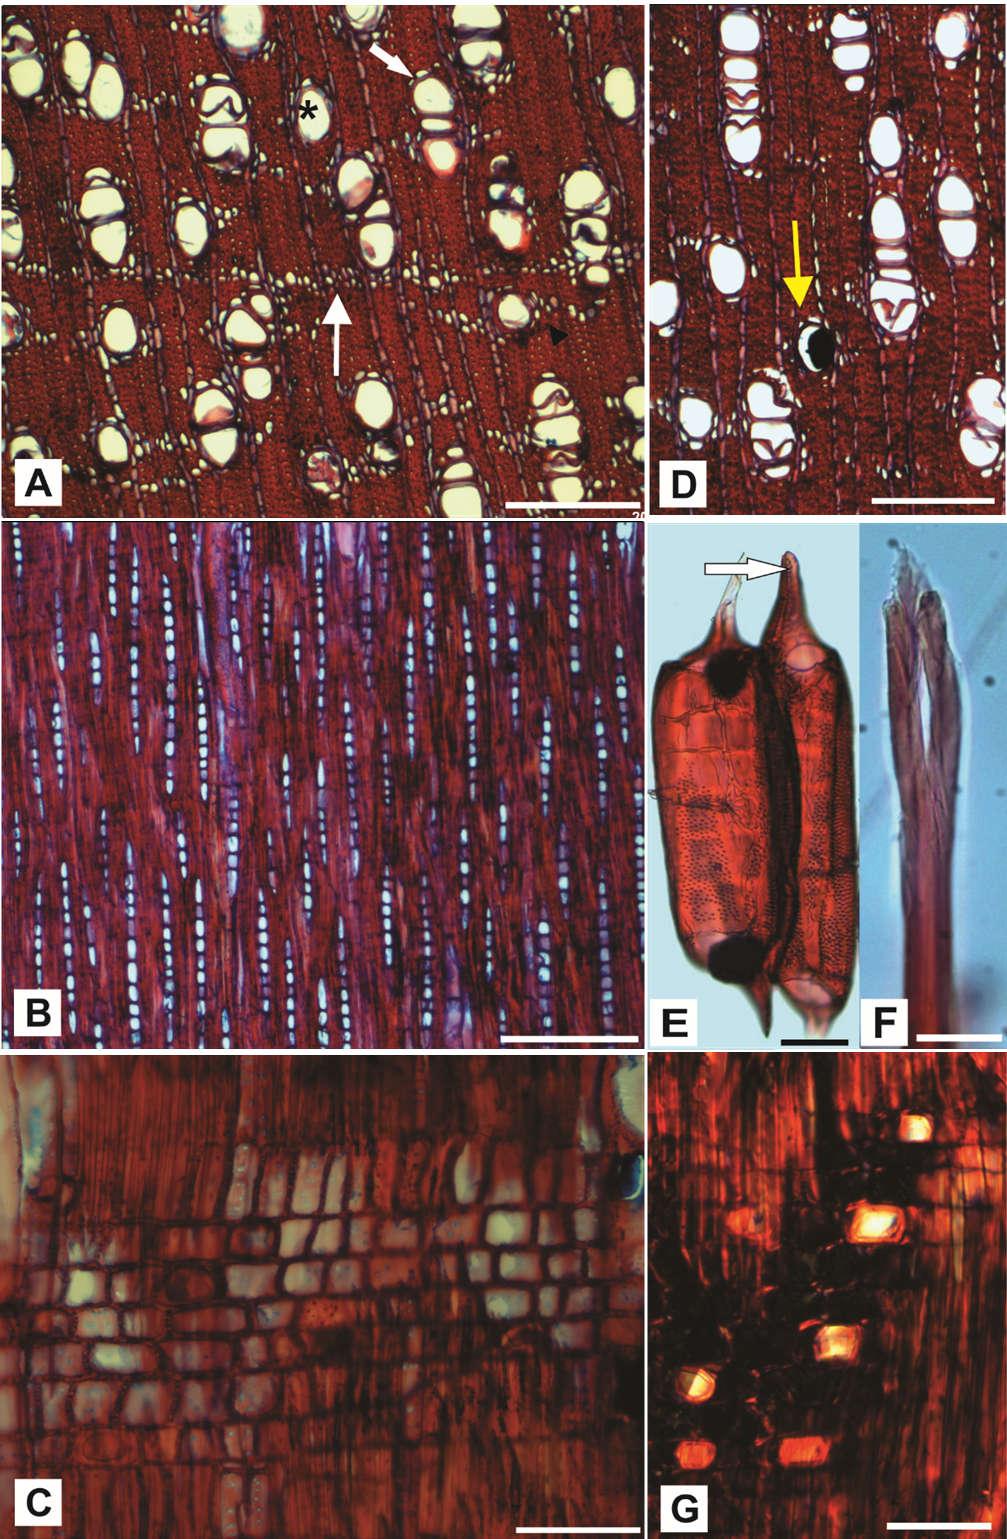 Figura 5. Anatomia do lenho de Trichilia casaretti. A. Vasos solitários (asterisco), vasos múltiplos (seta cheia), parênquima axial em faixas (seta fina) e parênquima axial paratraqueal aliforme (cabeça de seta), ST.